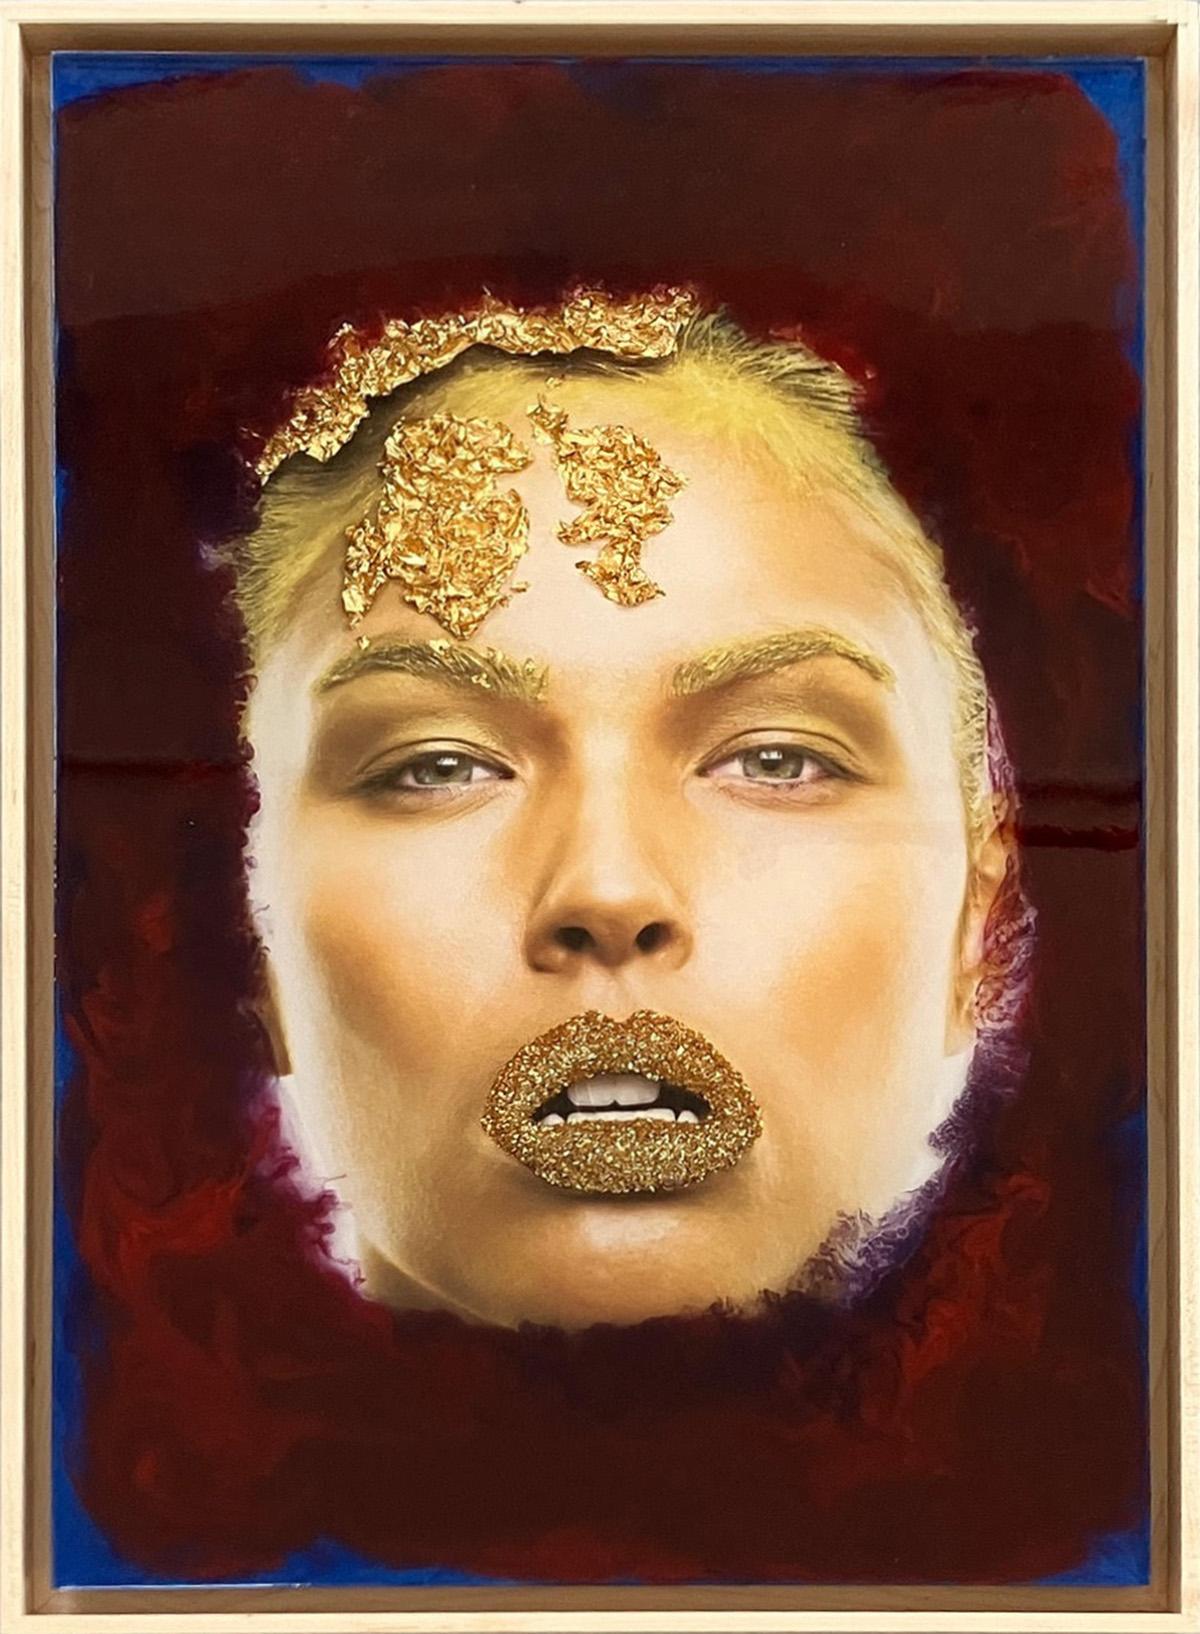 Gold Kiss 3D.  Mixed media portrait - Mixed Media Art by Koray Erkaya